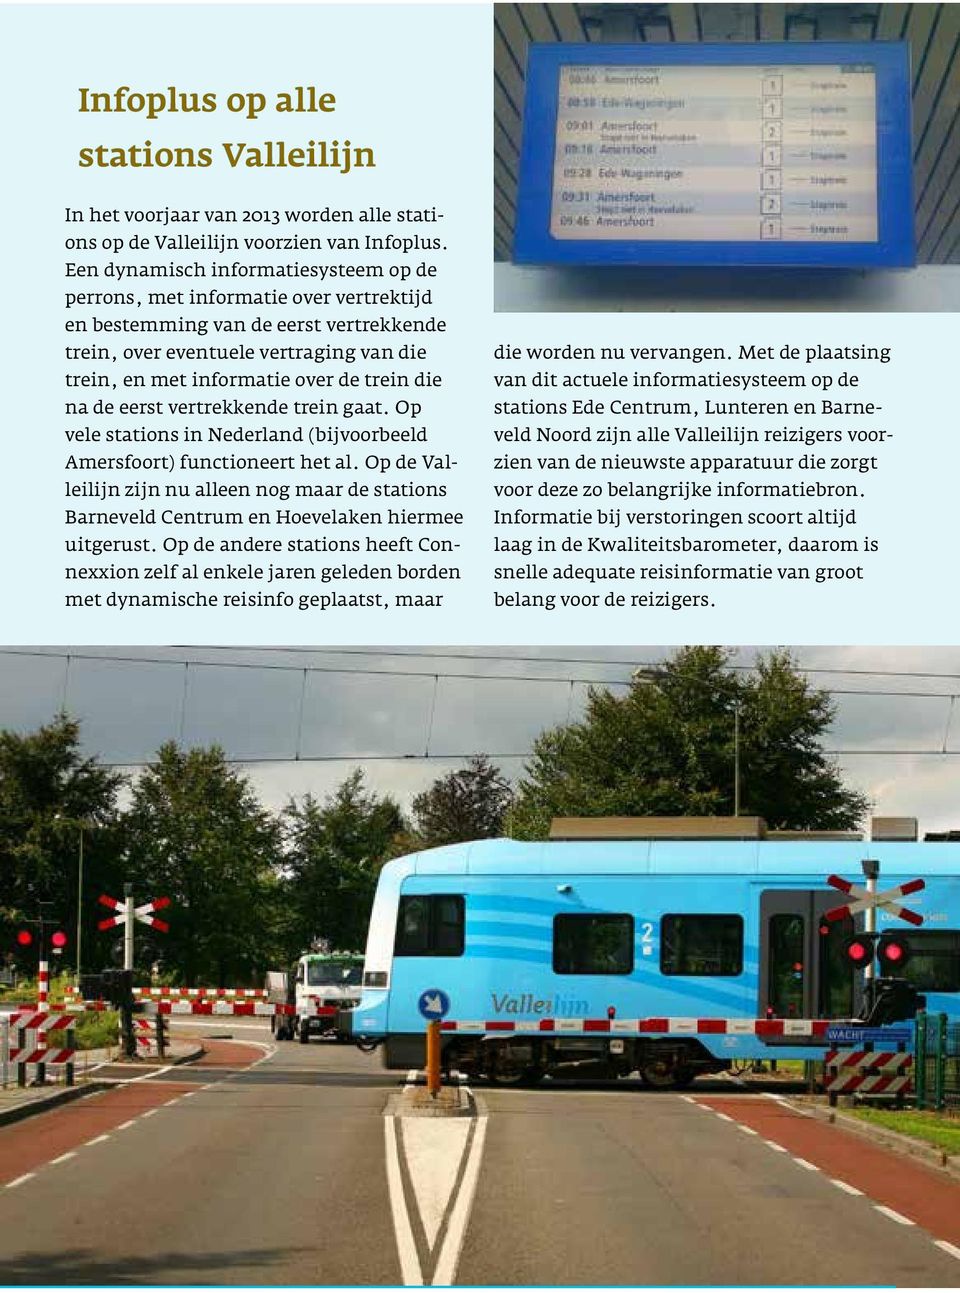 die na de eerst vertrekkende trein gaat. Op vele stations in Nederland (bijvoorbeeld Amersfoort) functioneert het al.